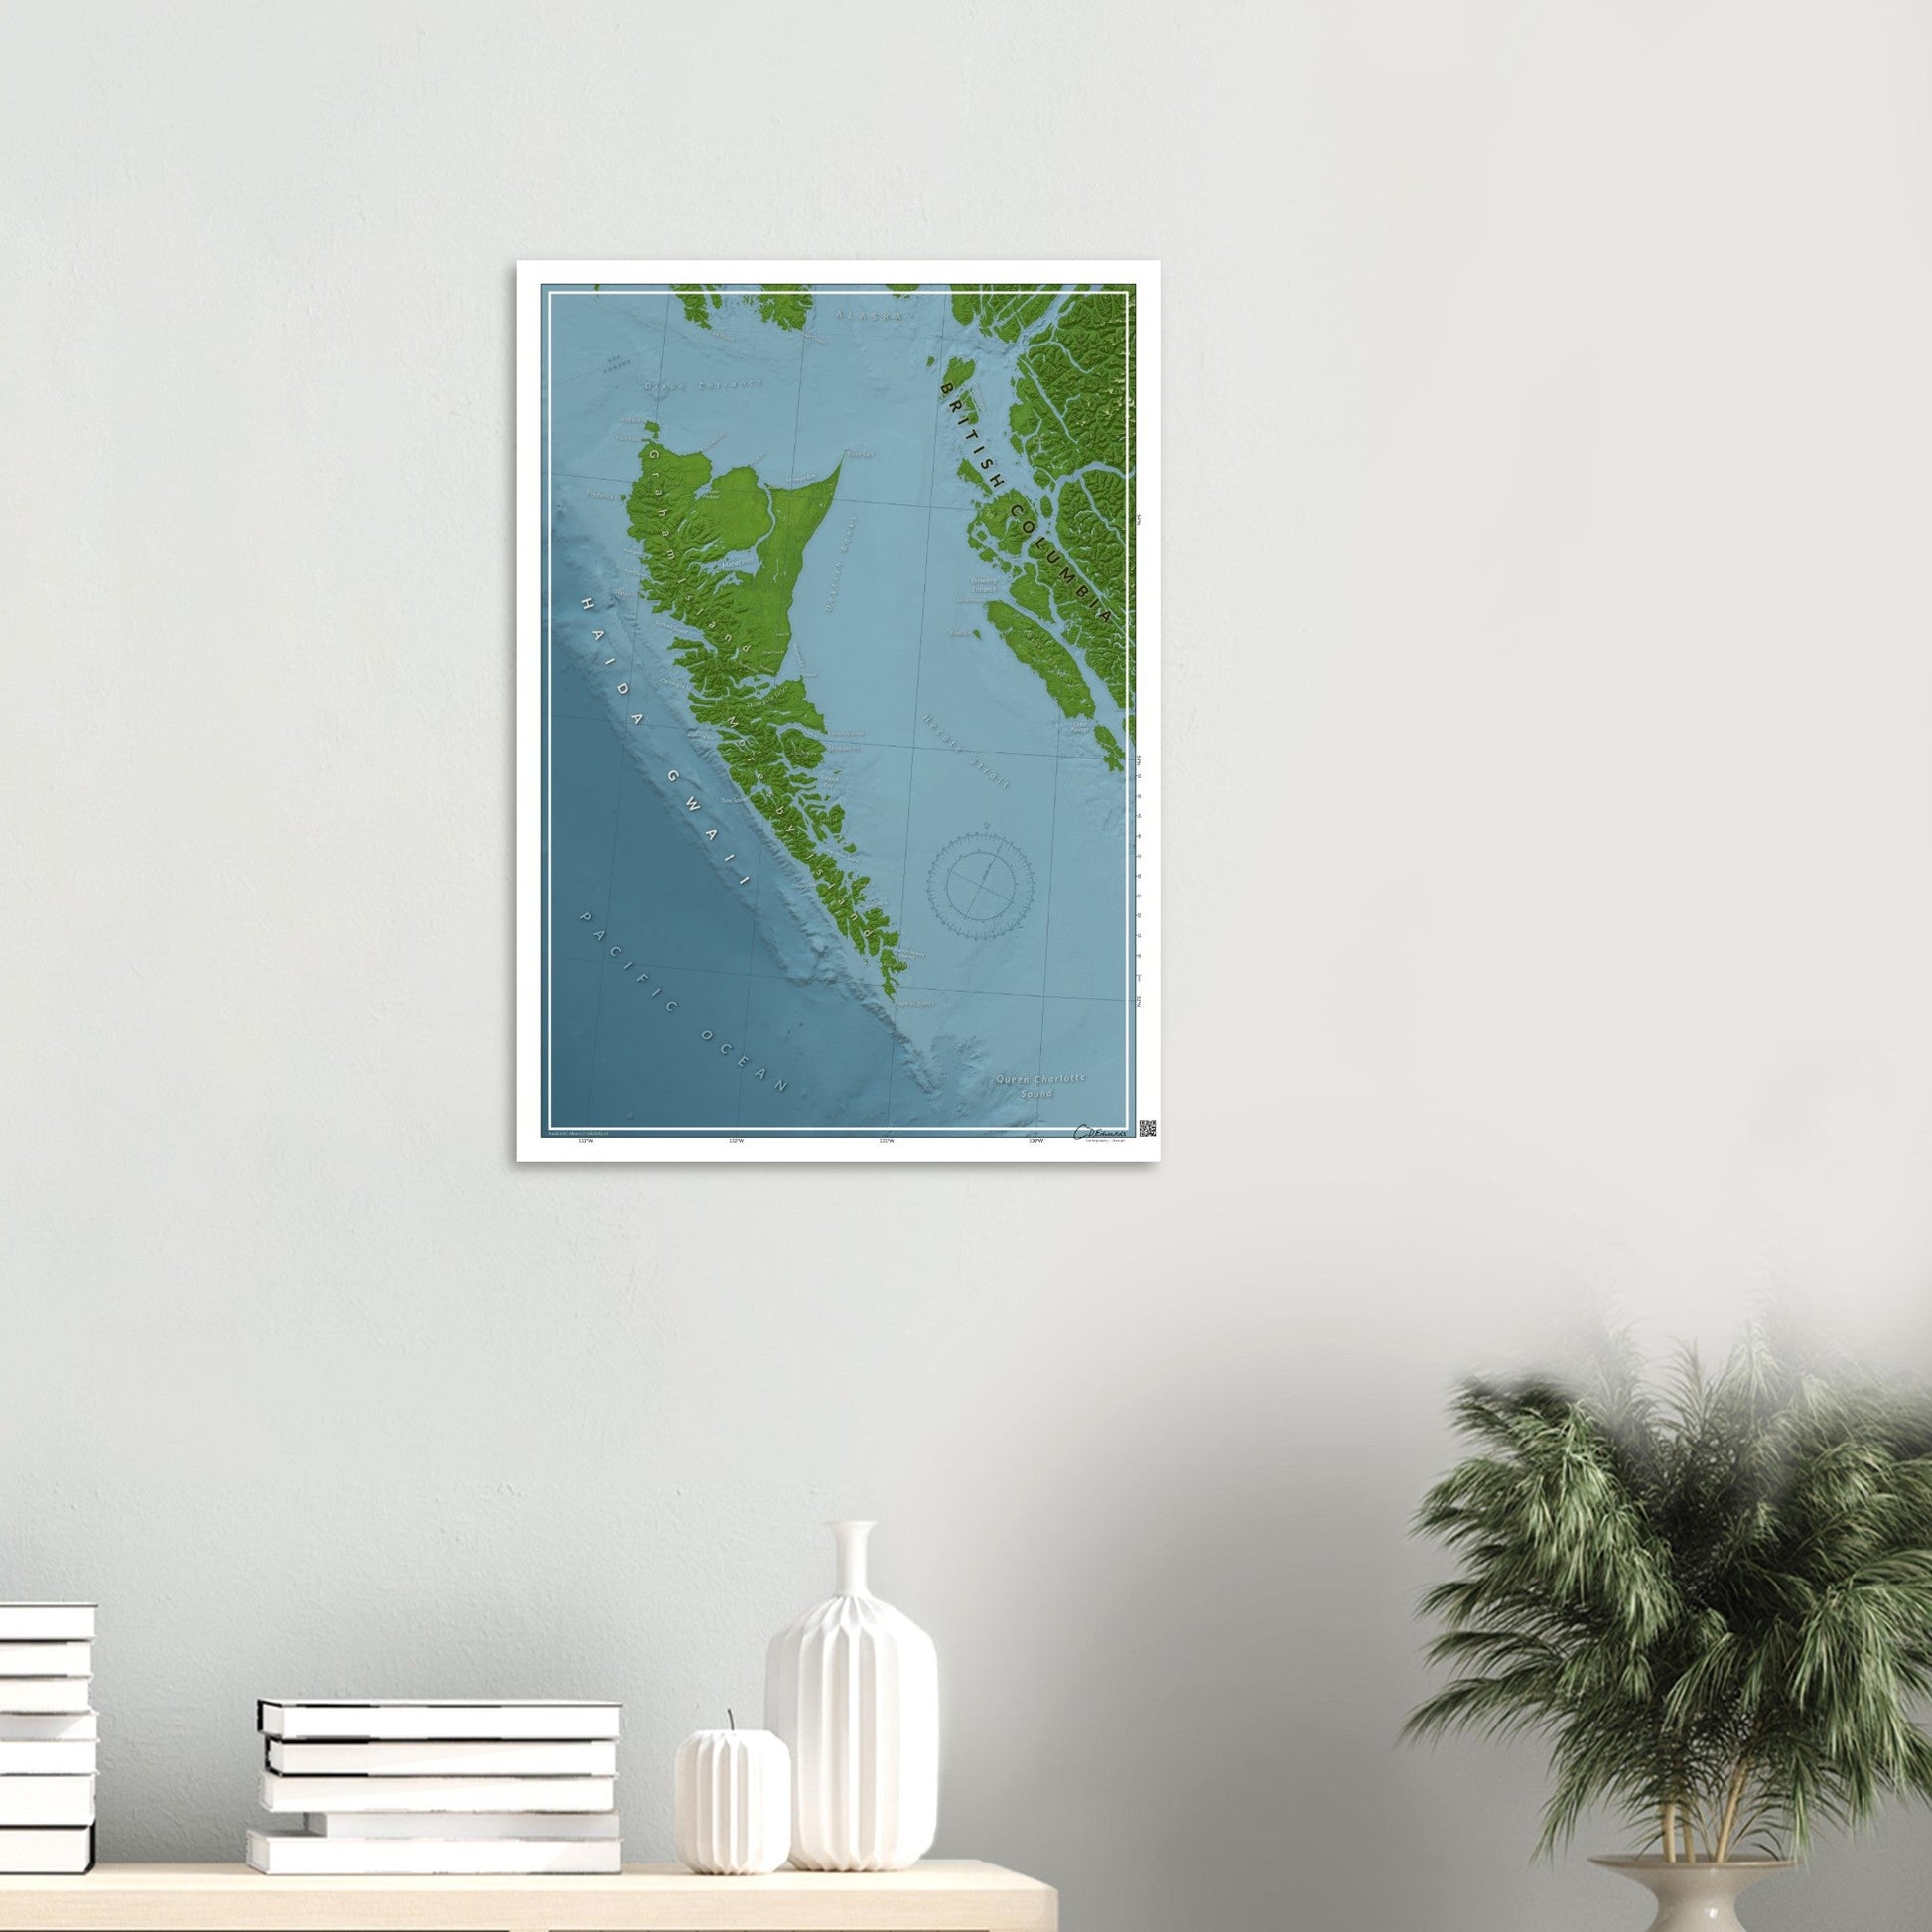 Map of Haida Gwaii - www.cdedwards.com